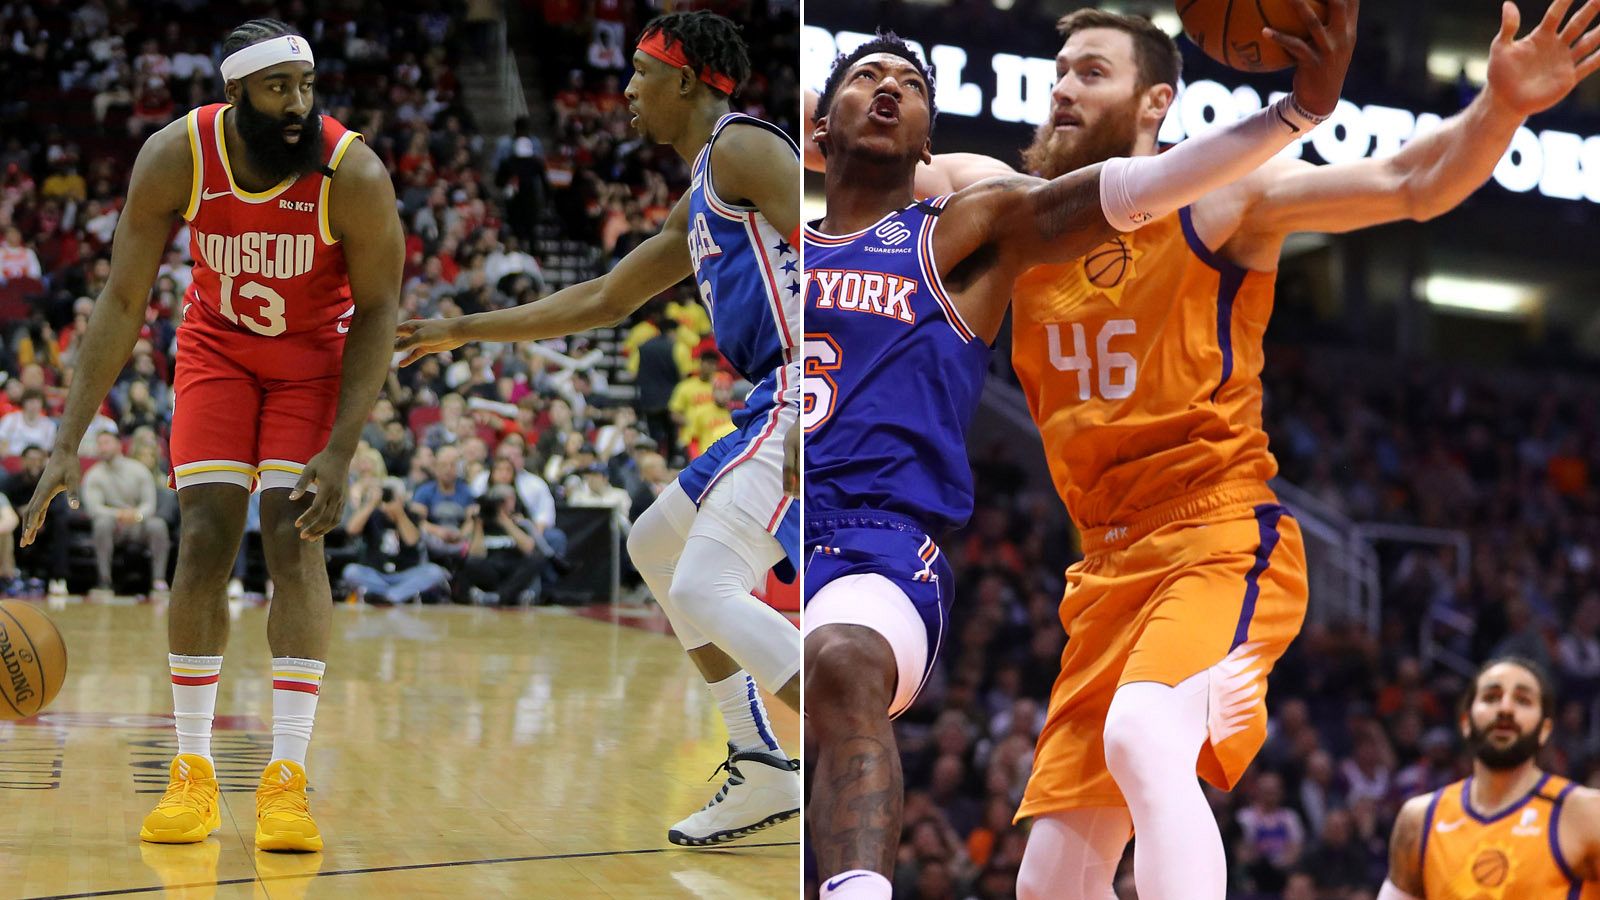 Fotomontaje de dos lances de sendos partidos de la NBA. A la izquierda, Harden (Rockets) ante la defensa de Richardson (Sixers); a la derecha, un lance del encuentro entre los Suns y los Knicks, con Ricky Rubio al fondo.